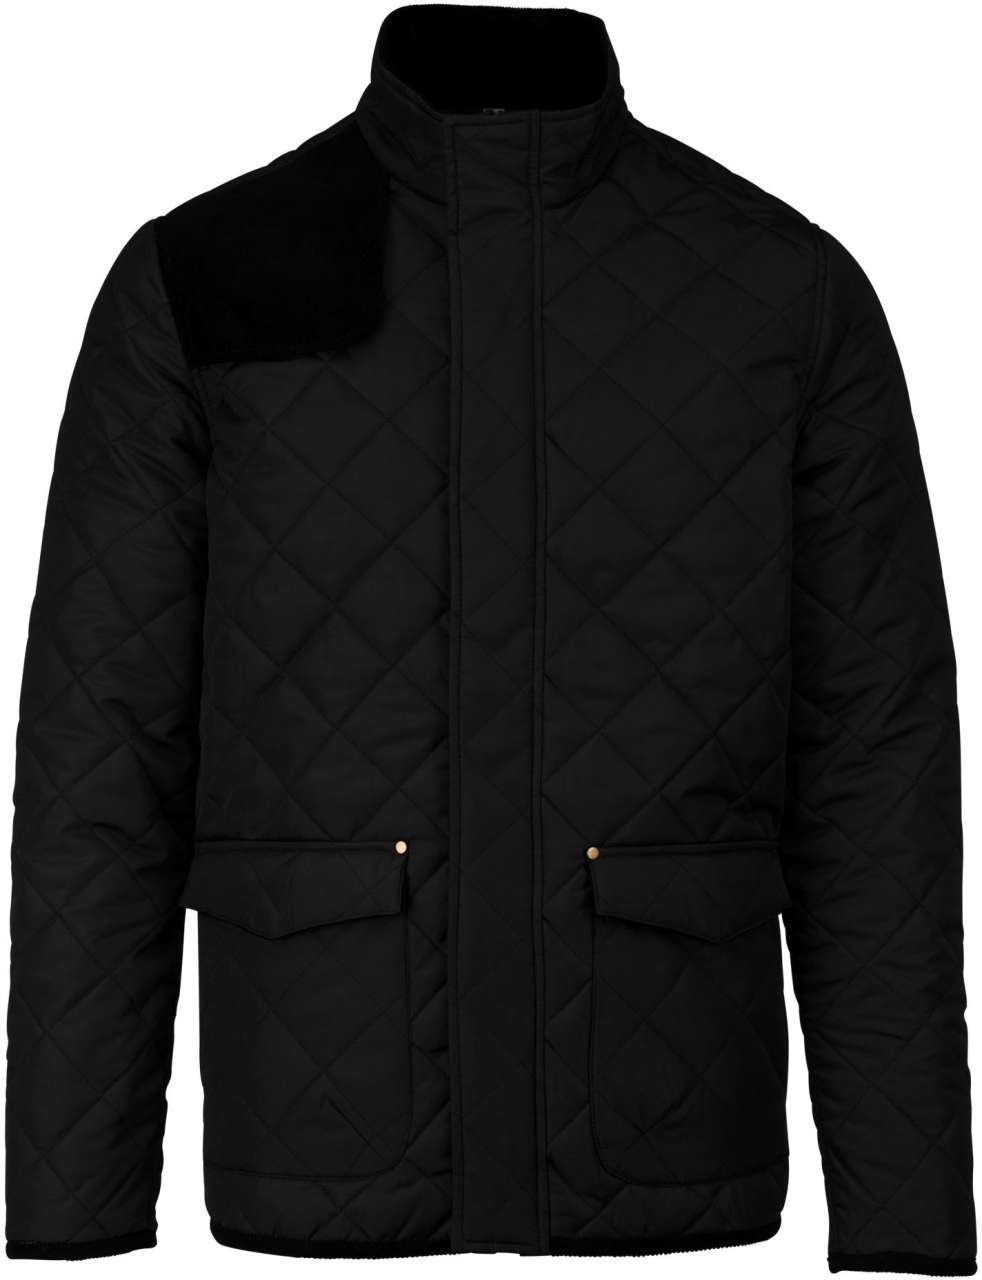 Jachetă pentru bărbați matlasată BKA6126